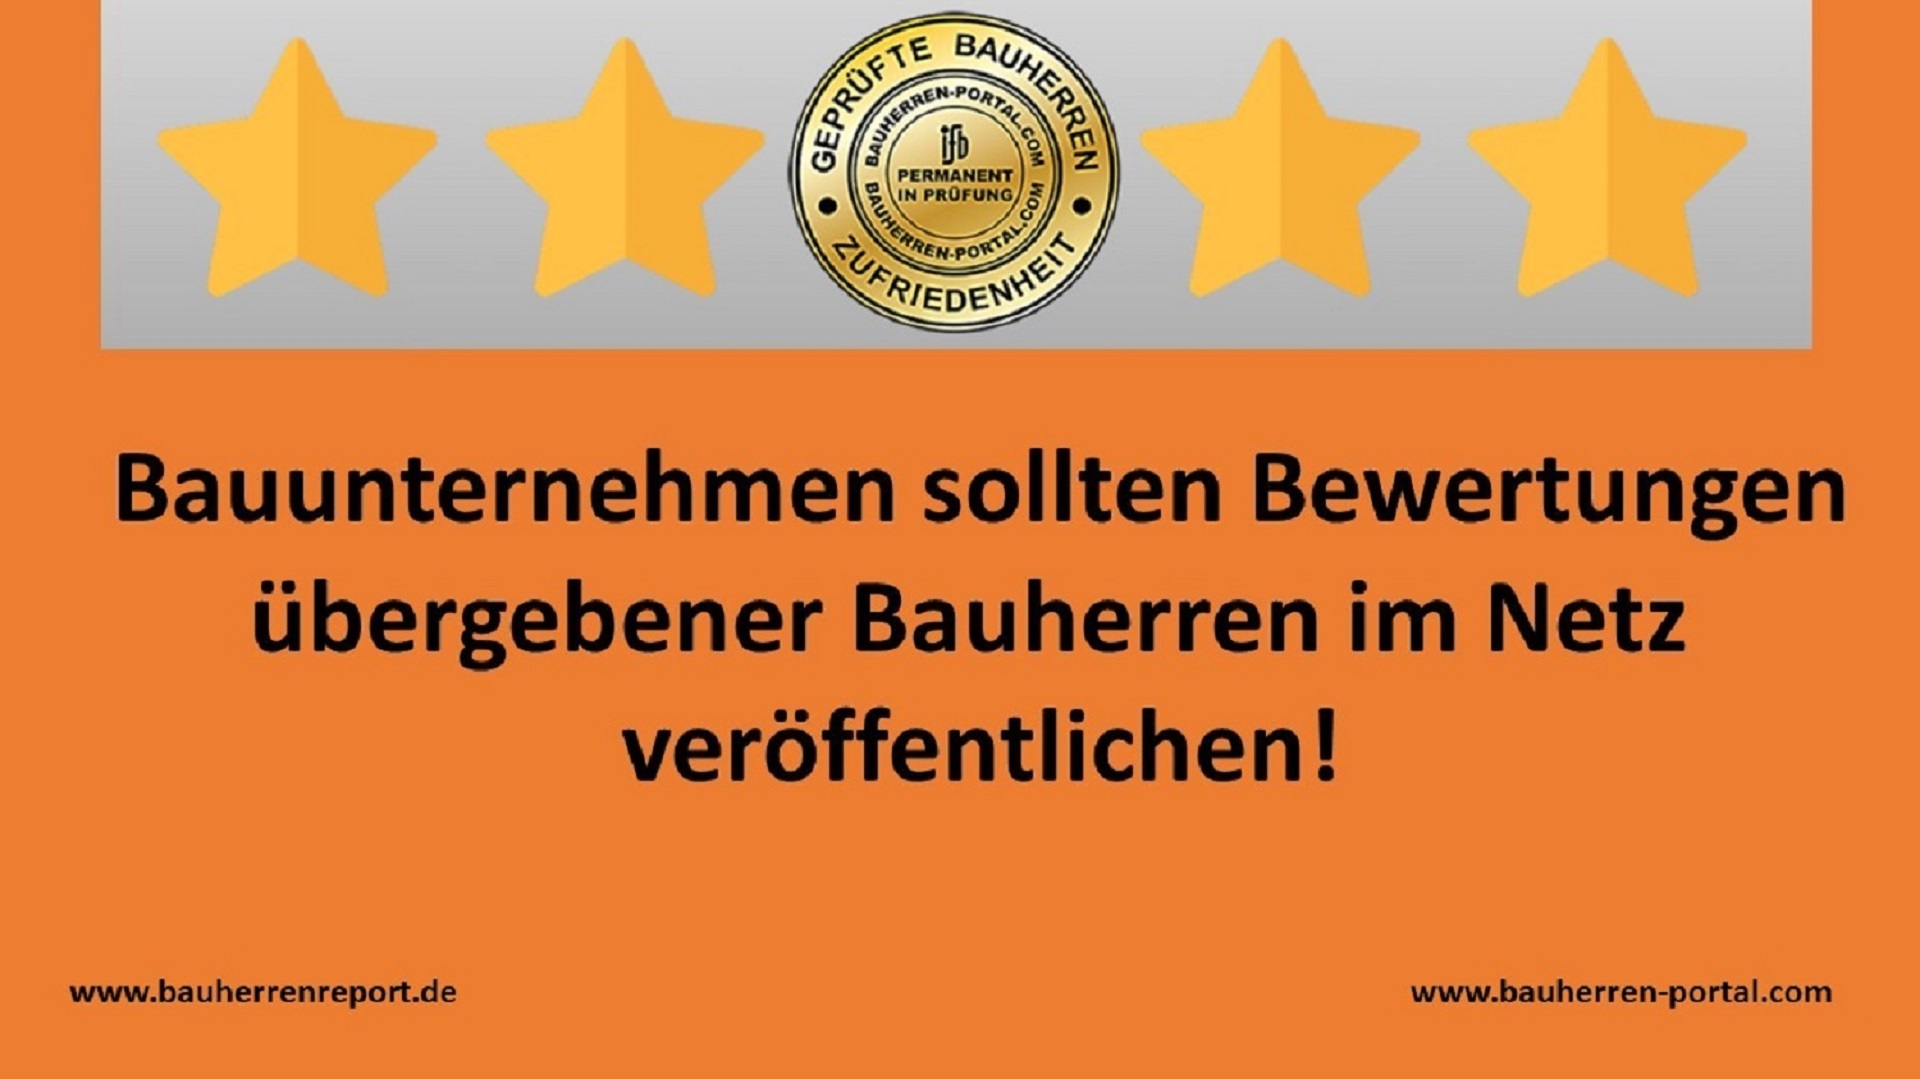 Kundenorientierung als Auszeichnung für Bauunternehmen: BAUHERREN-PORTAL